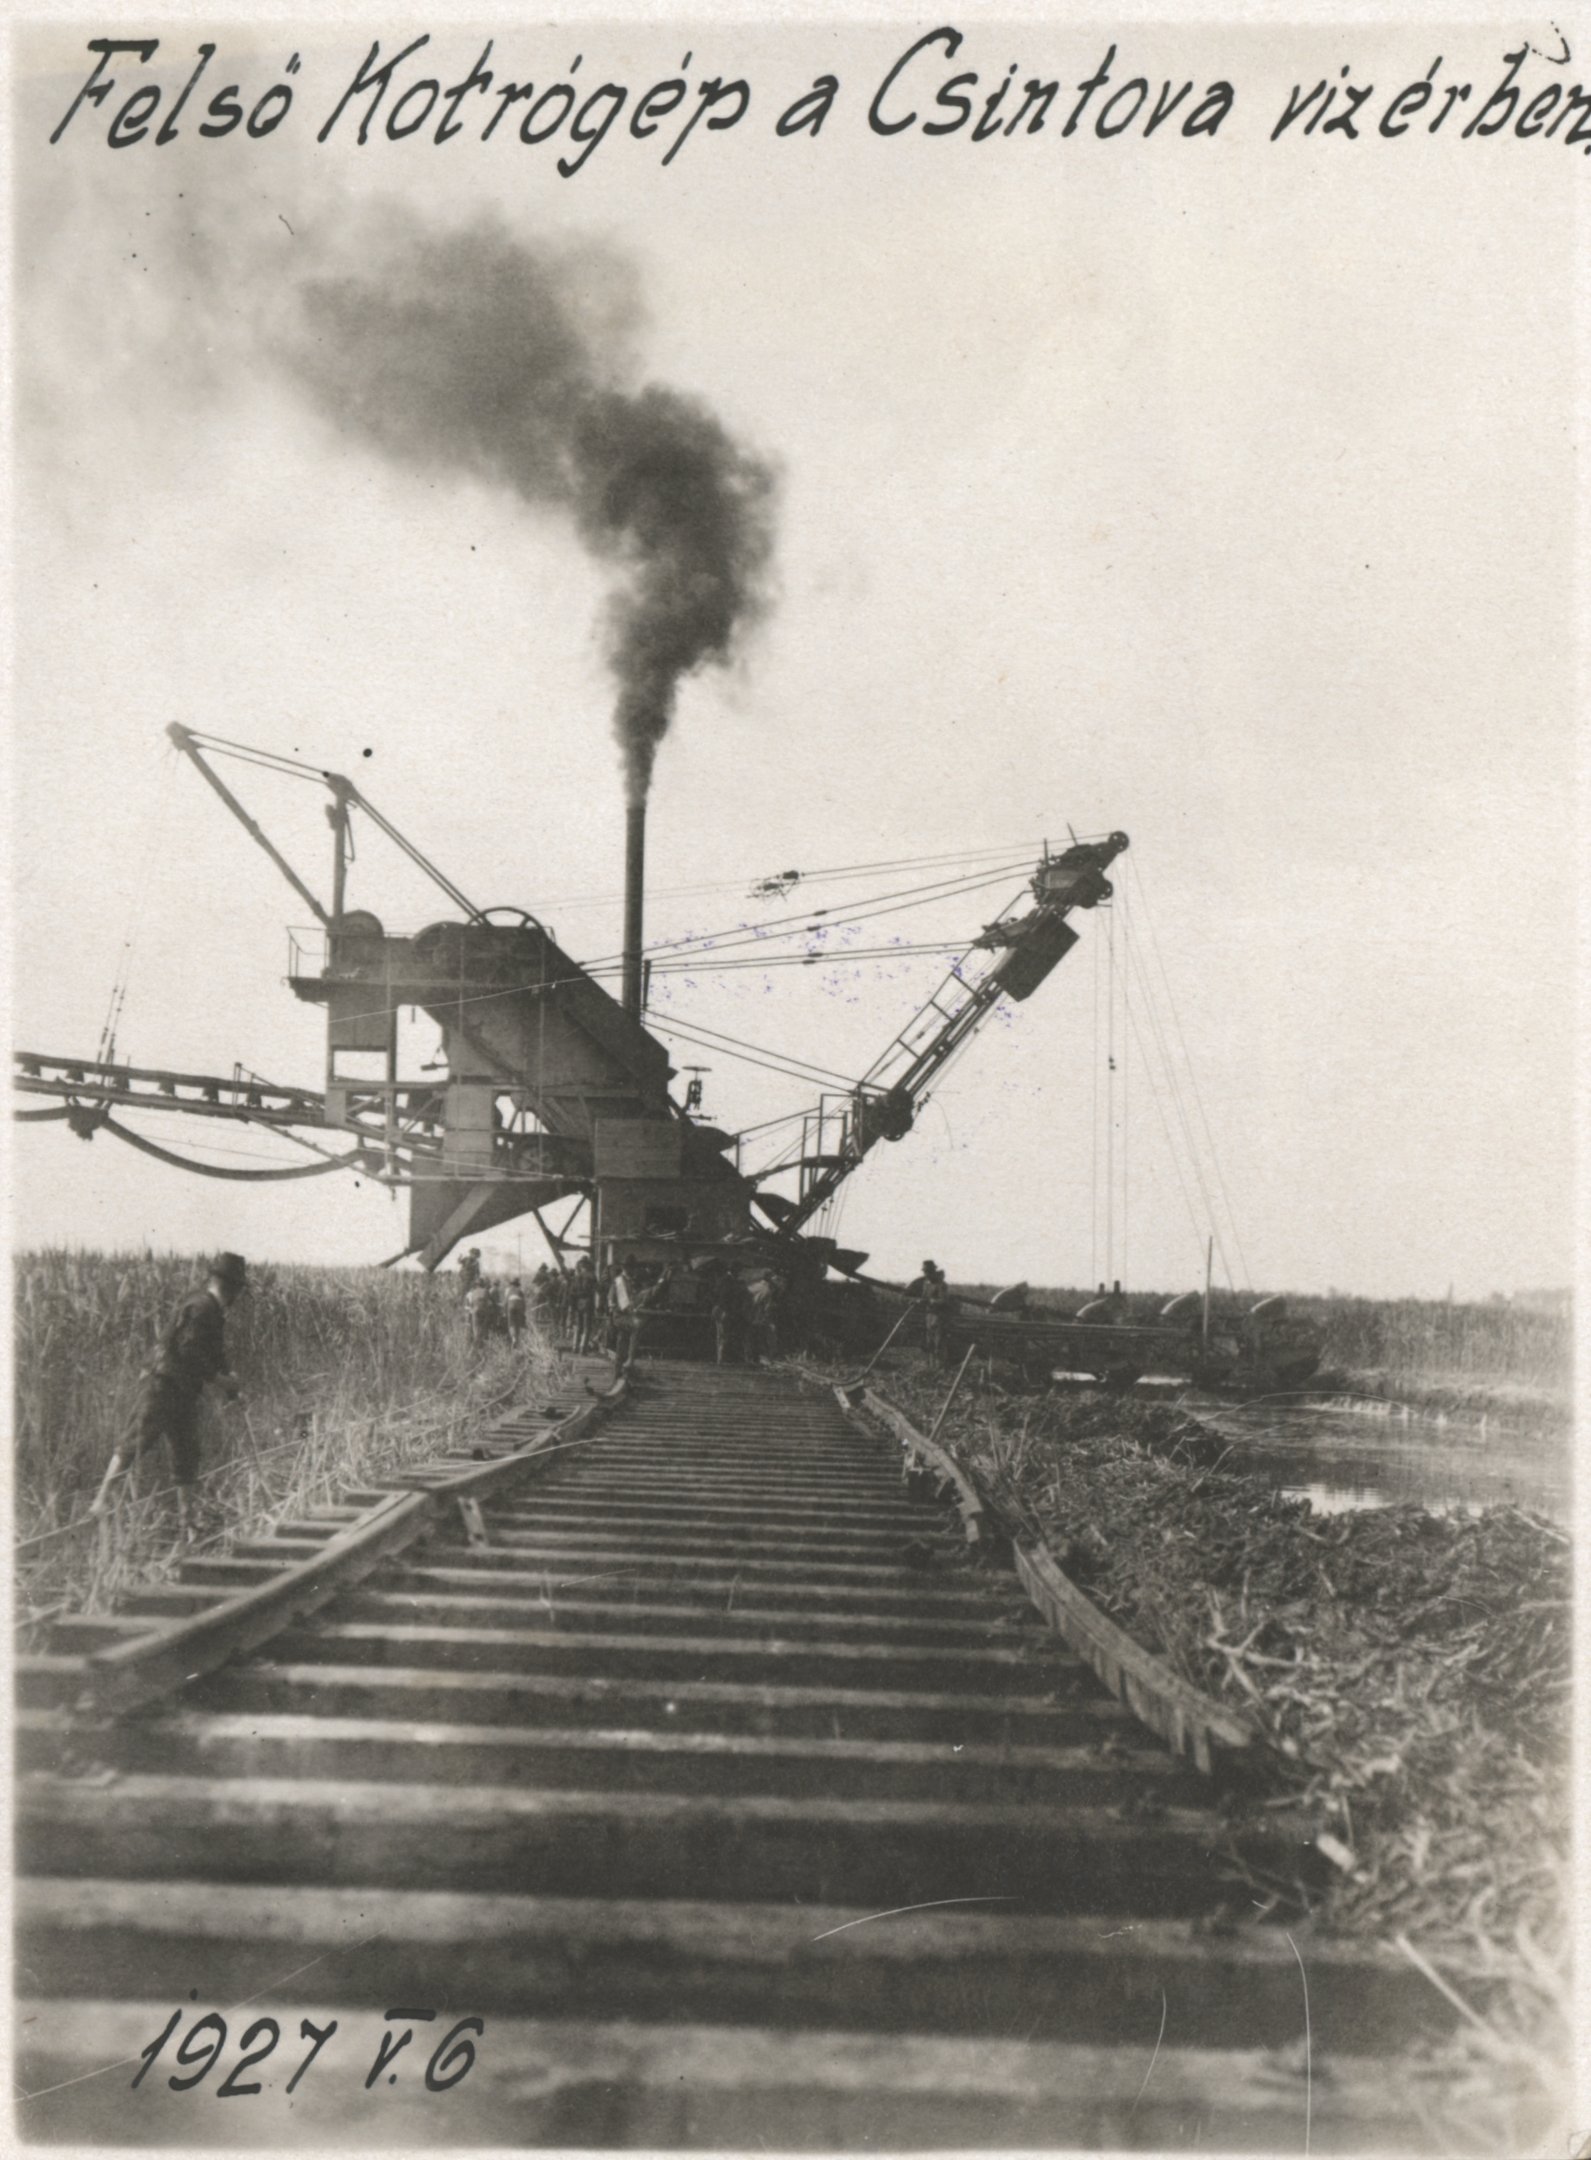 Felső kotrógép a Csintova vízérben, 1927. május 6. (Magyar Környezetvédelmi és Vízügyi Múzeum - Duna Múzeum CC BY-NC-SA)